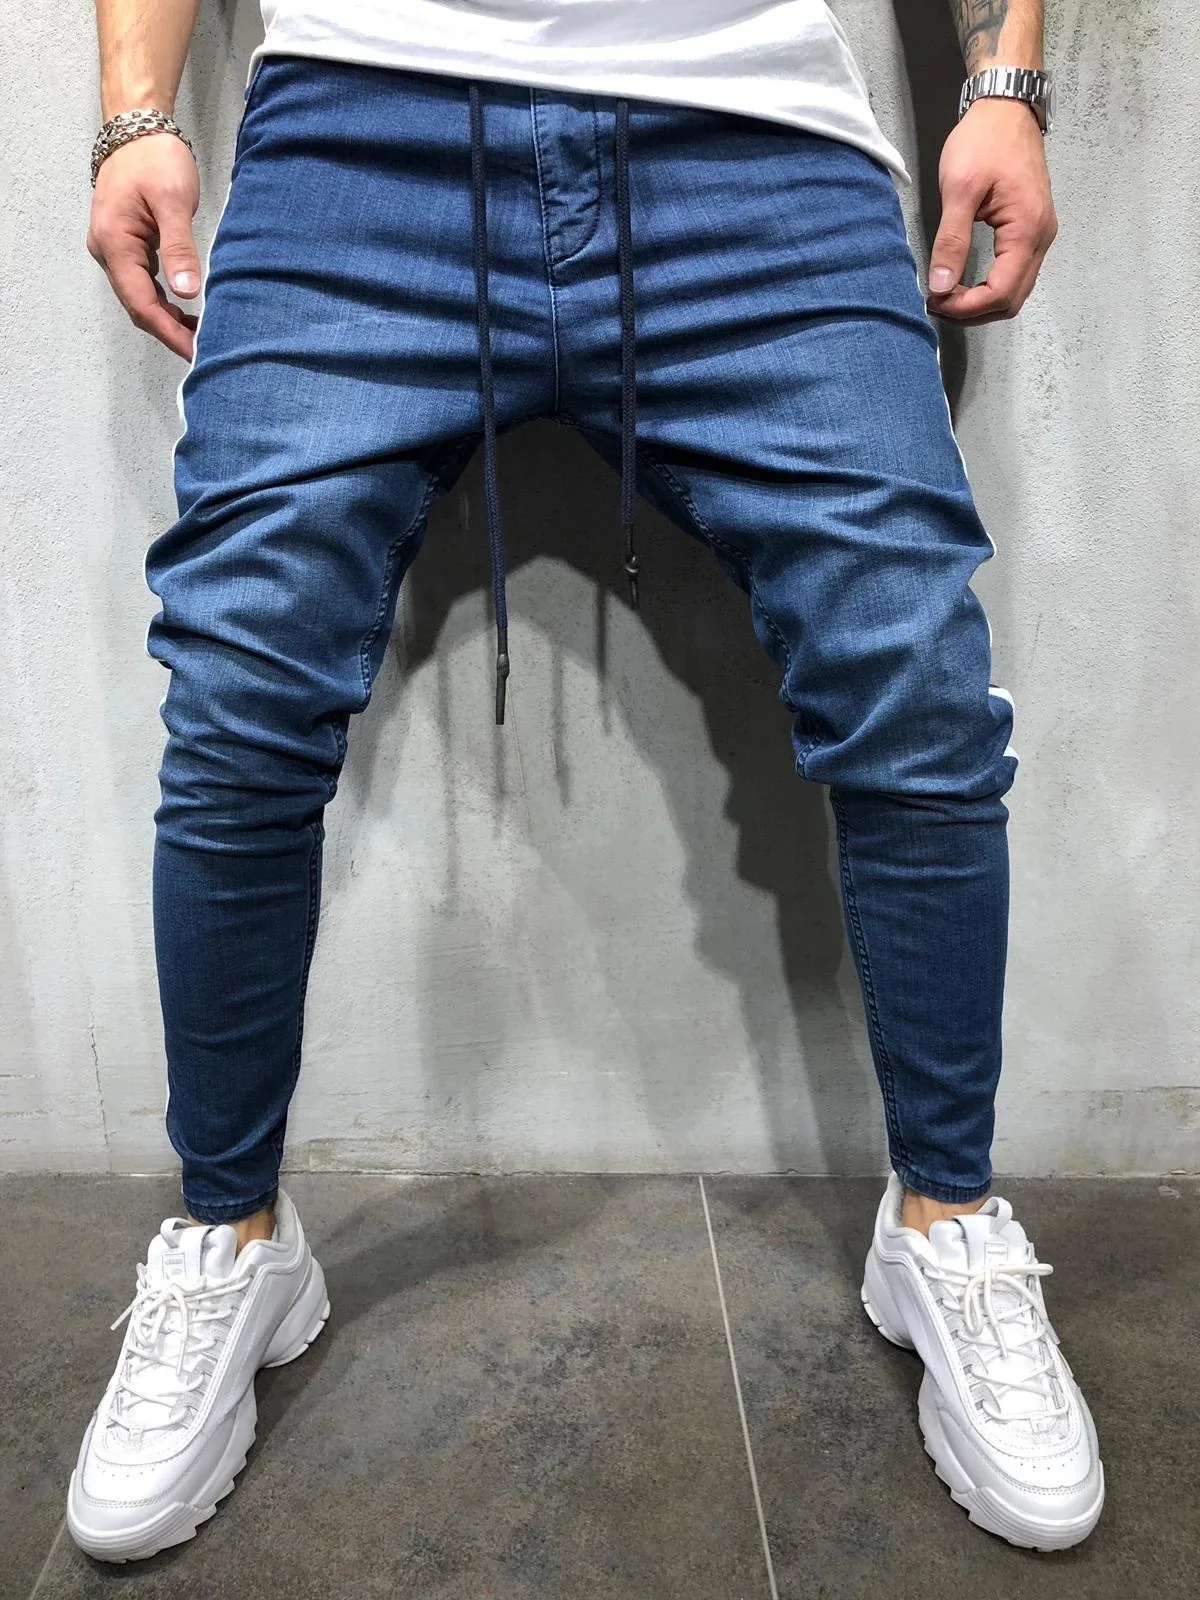 Новинка, мужские Модные Повседневные джинсы из джинсовой ткани, индивидуальная прострочка по бокам, мужские уличные джинсы в стиле хип-хоп, индивидуальные джинсовые штаны